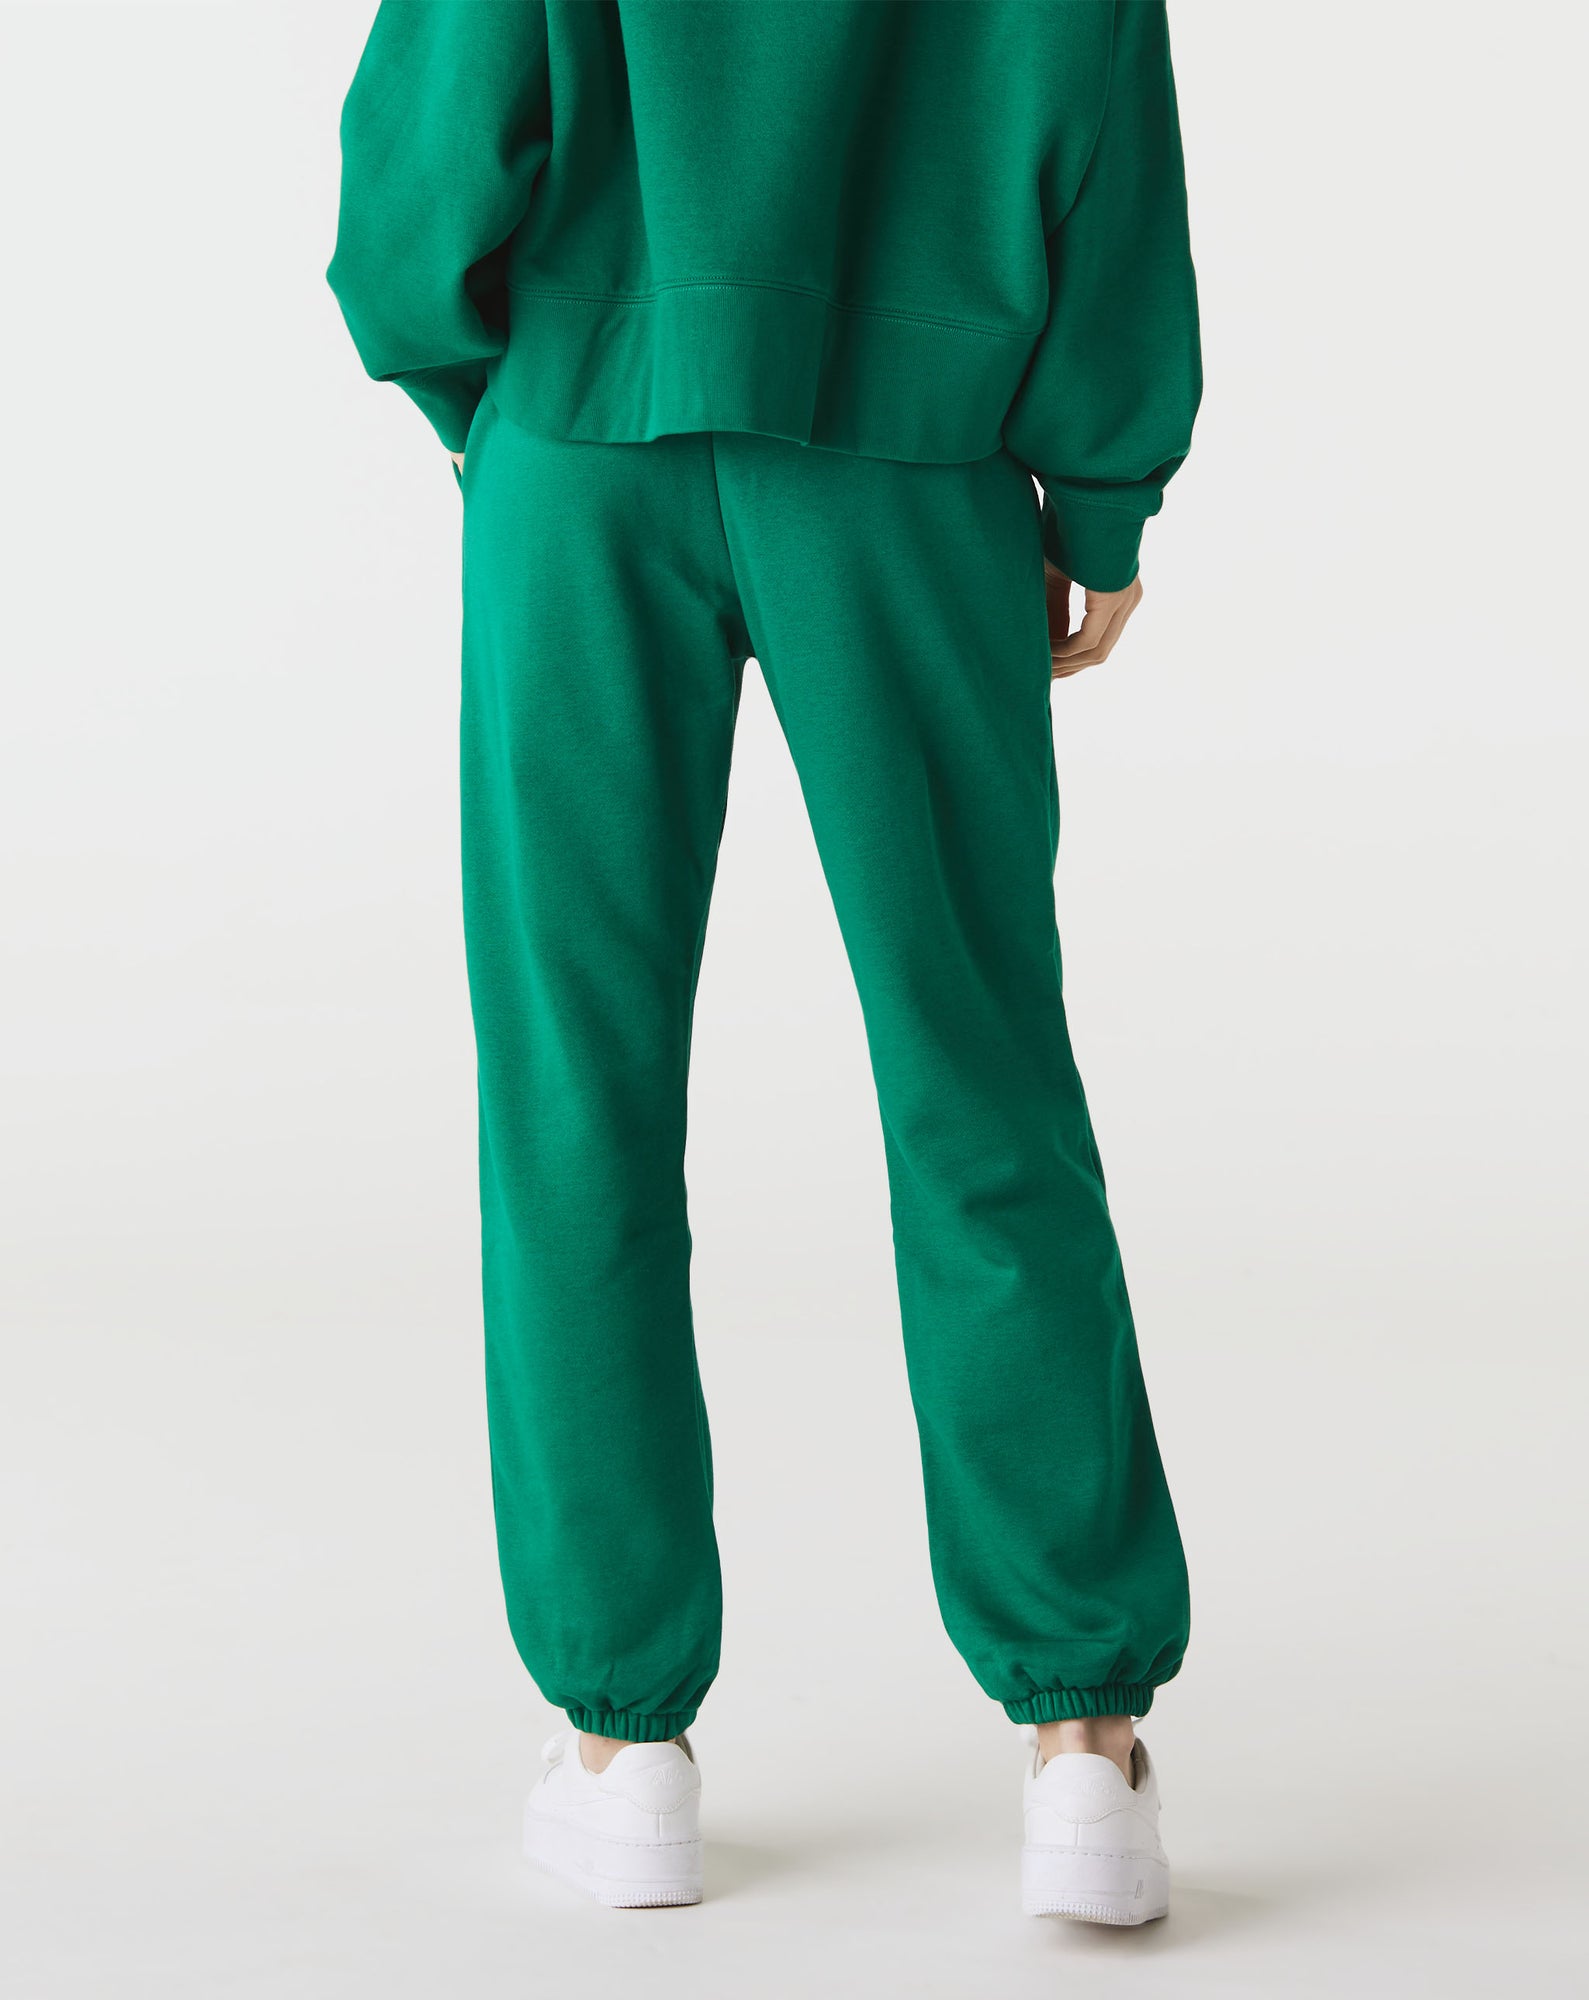 Nike Sportswear Essential Collection Women's Fleece Trousers - Green, BV4089-397